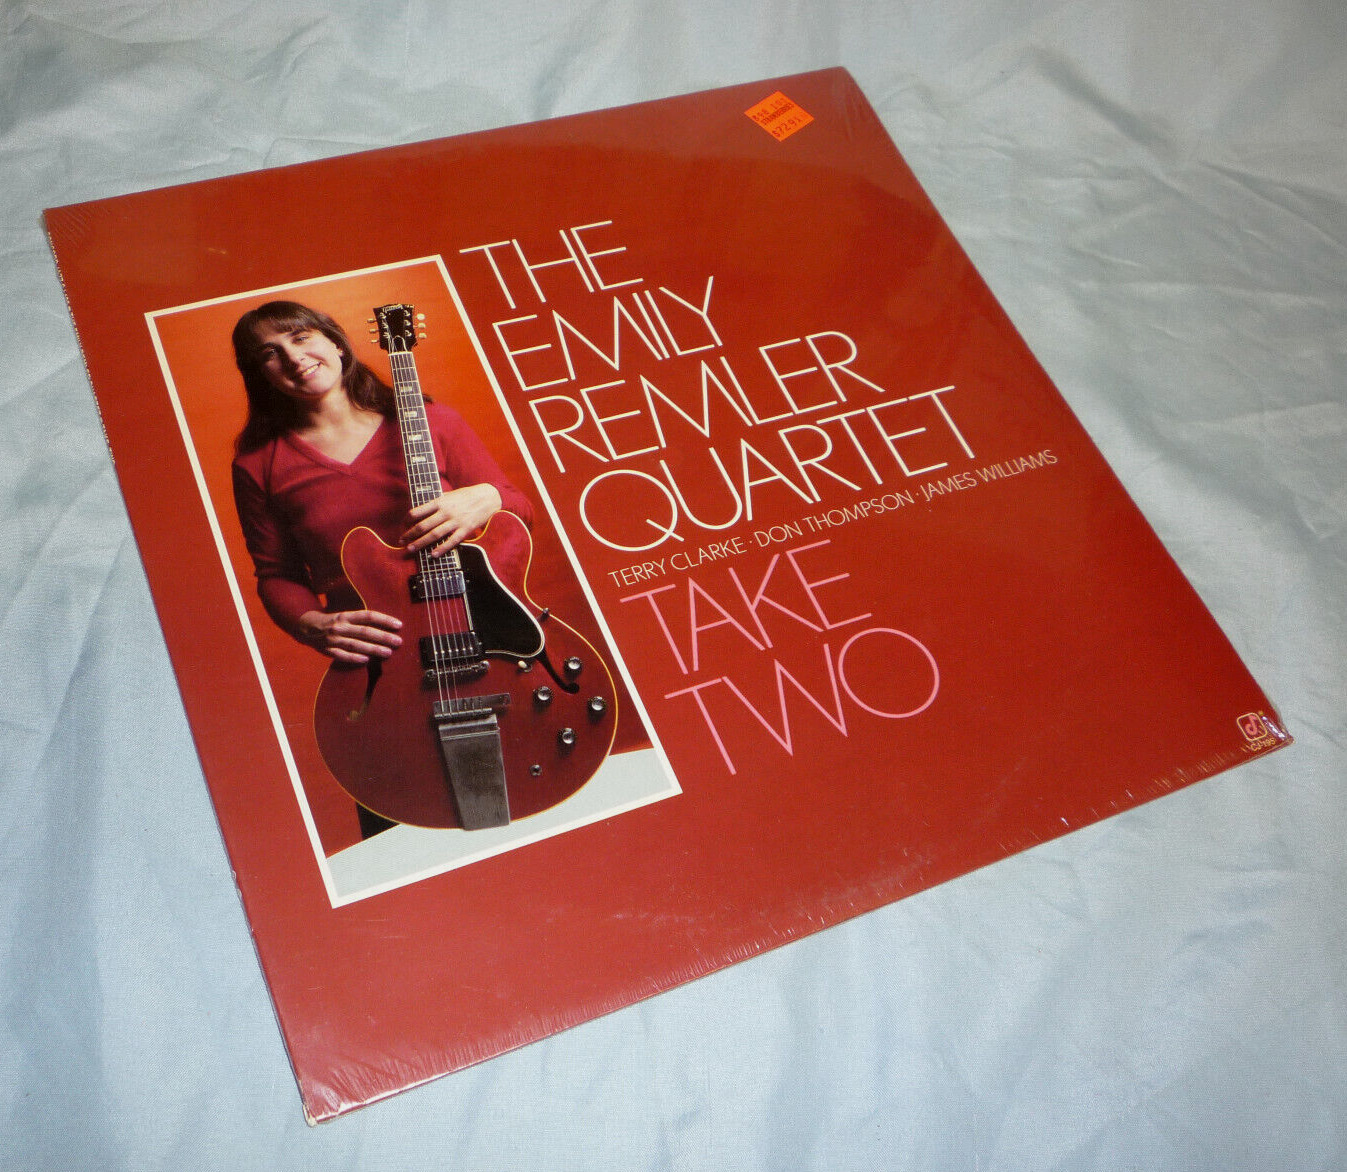 THE EMILY REMLER QUARTET "Take Two" 1982 Concord Jazz VINYL LP STILL SEALED!